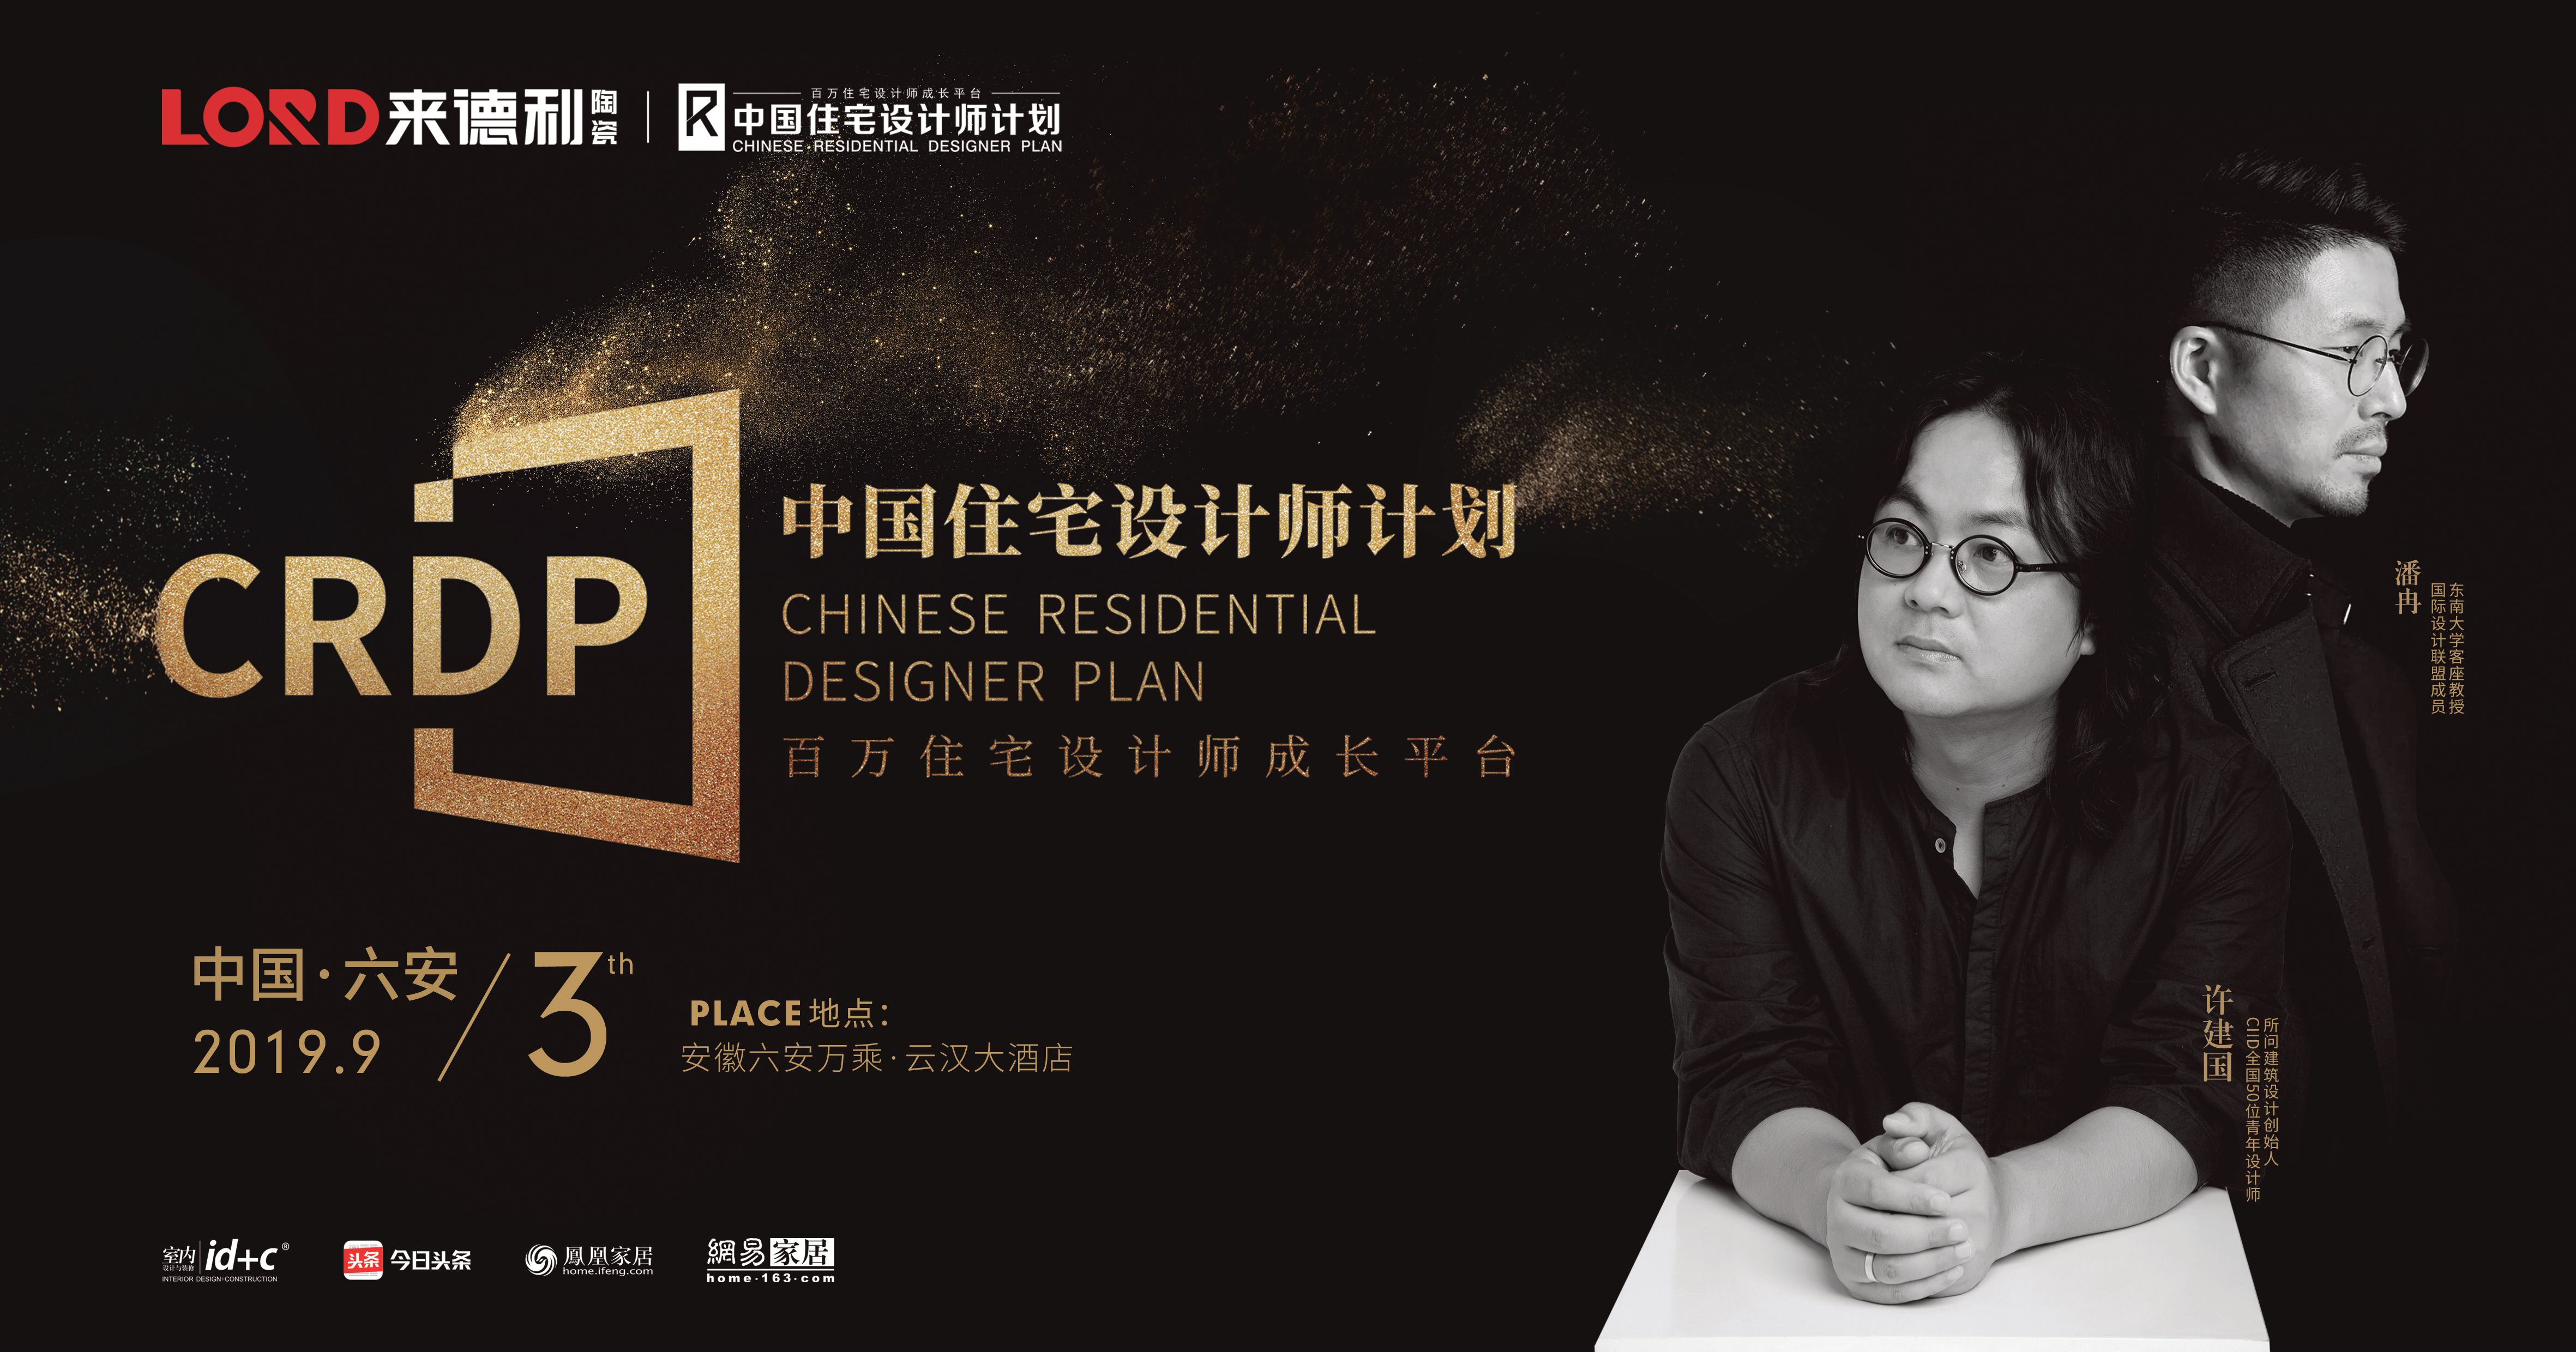 上一篇：来德利陶瓷联合id+c启动中国住宅设计师计划（六安站）